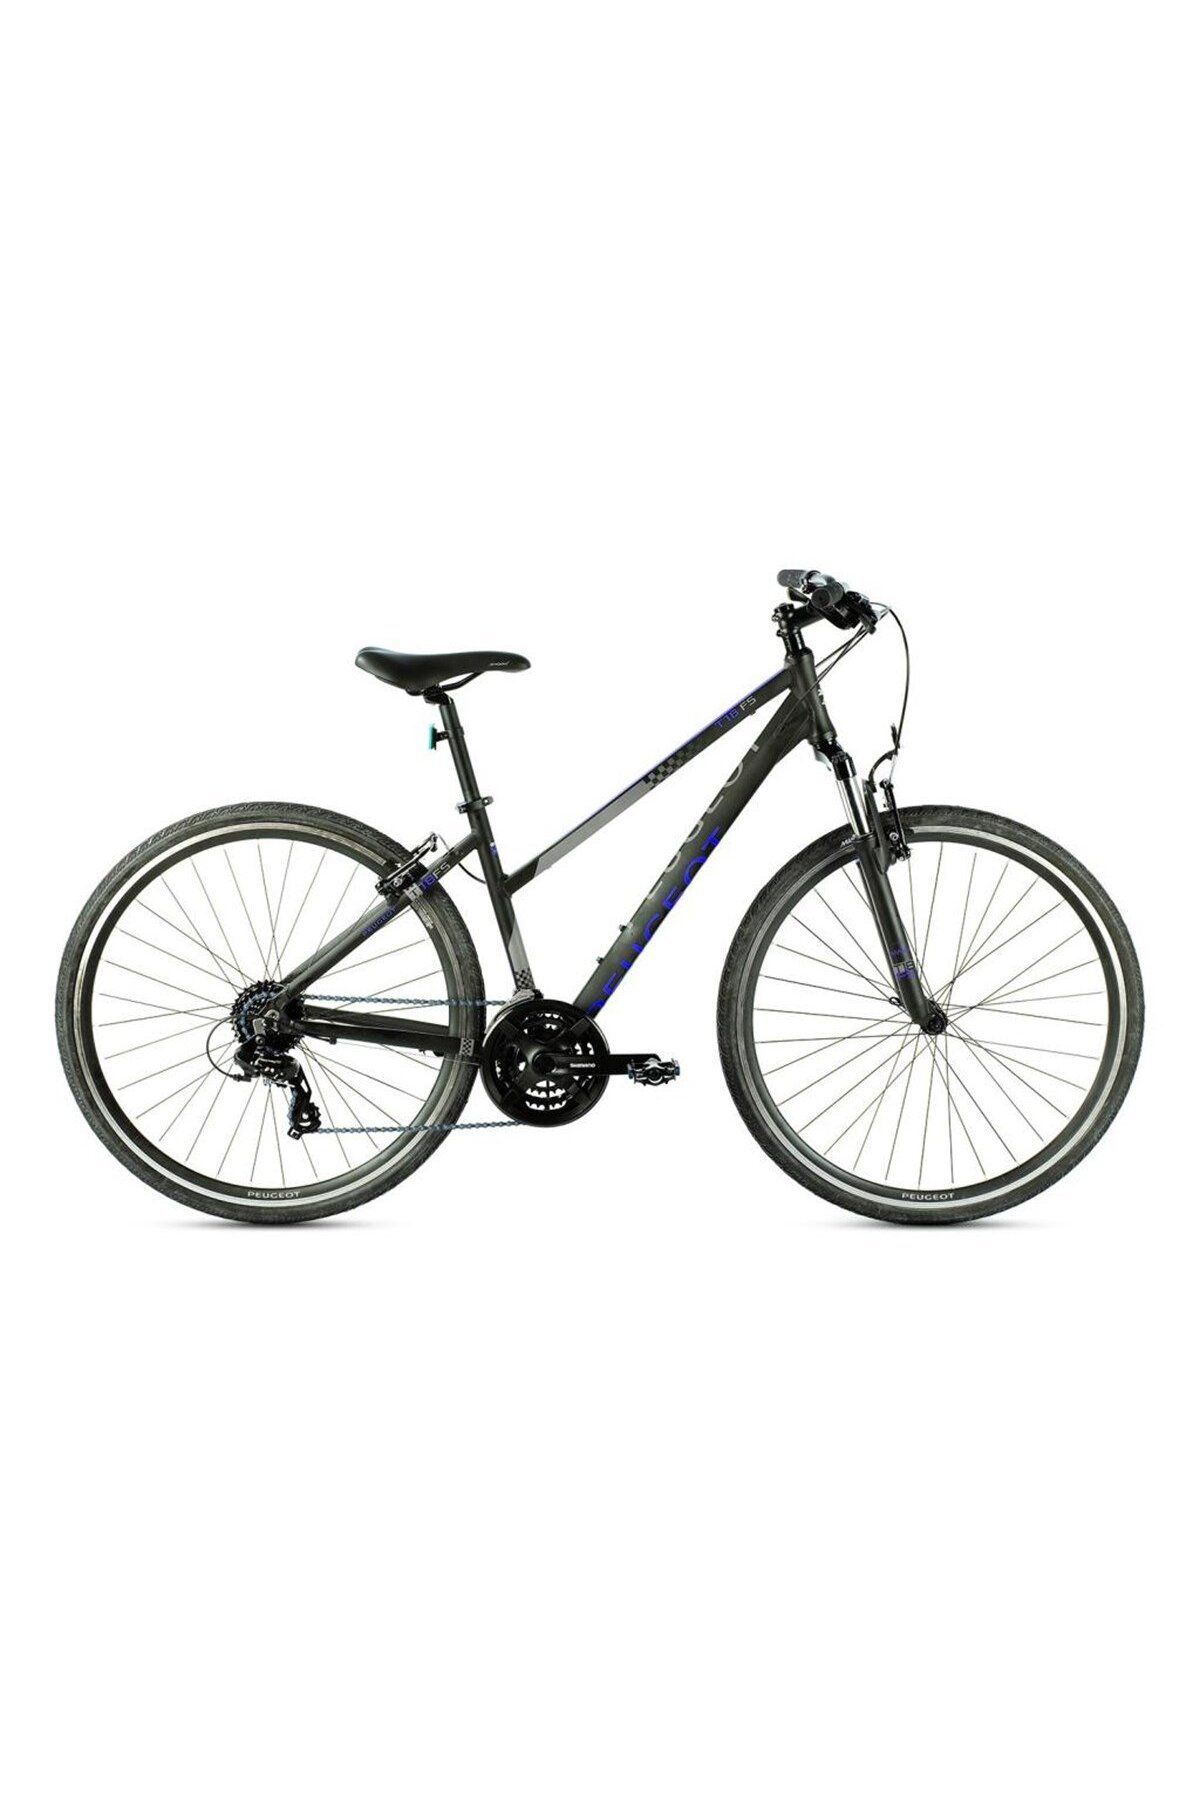 Peugeot Bisiklet Peugeot T17 FS Lady 28 Jant Şehir Bisikleti Siyah Mor 43 cm